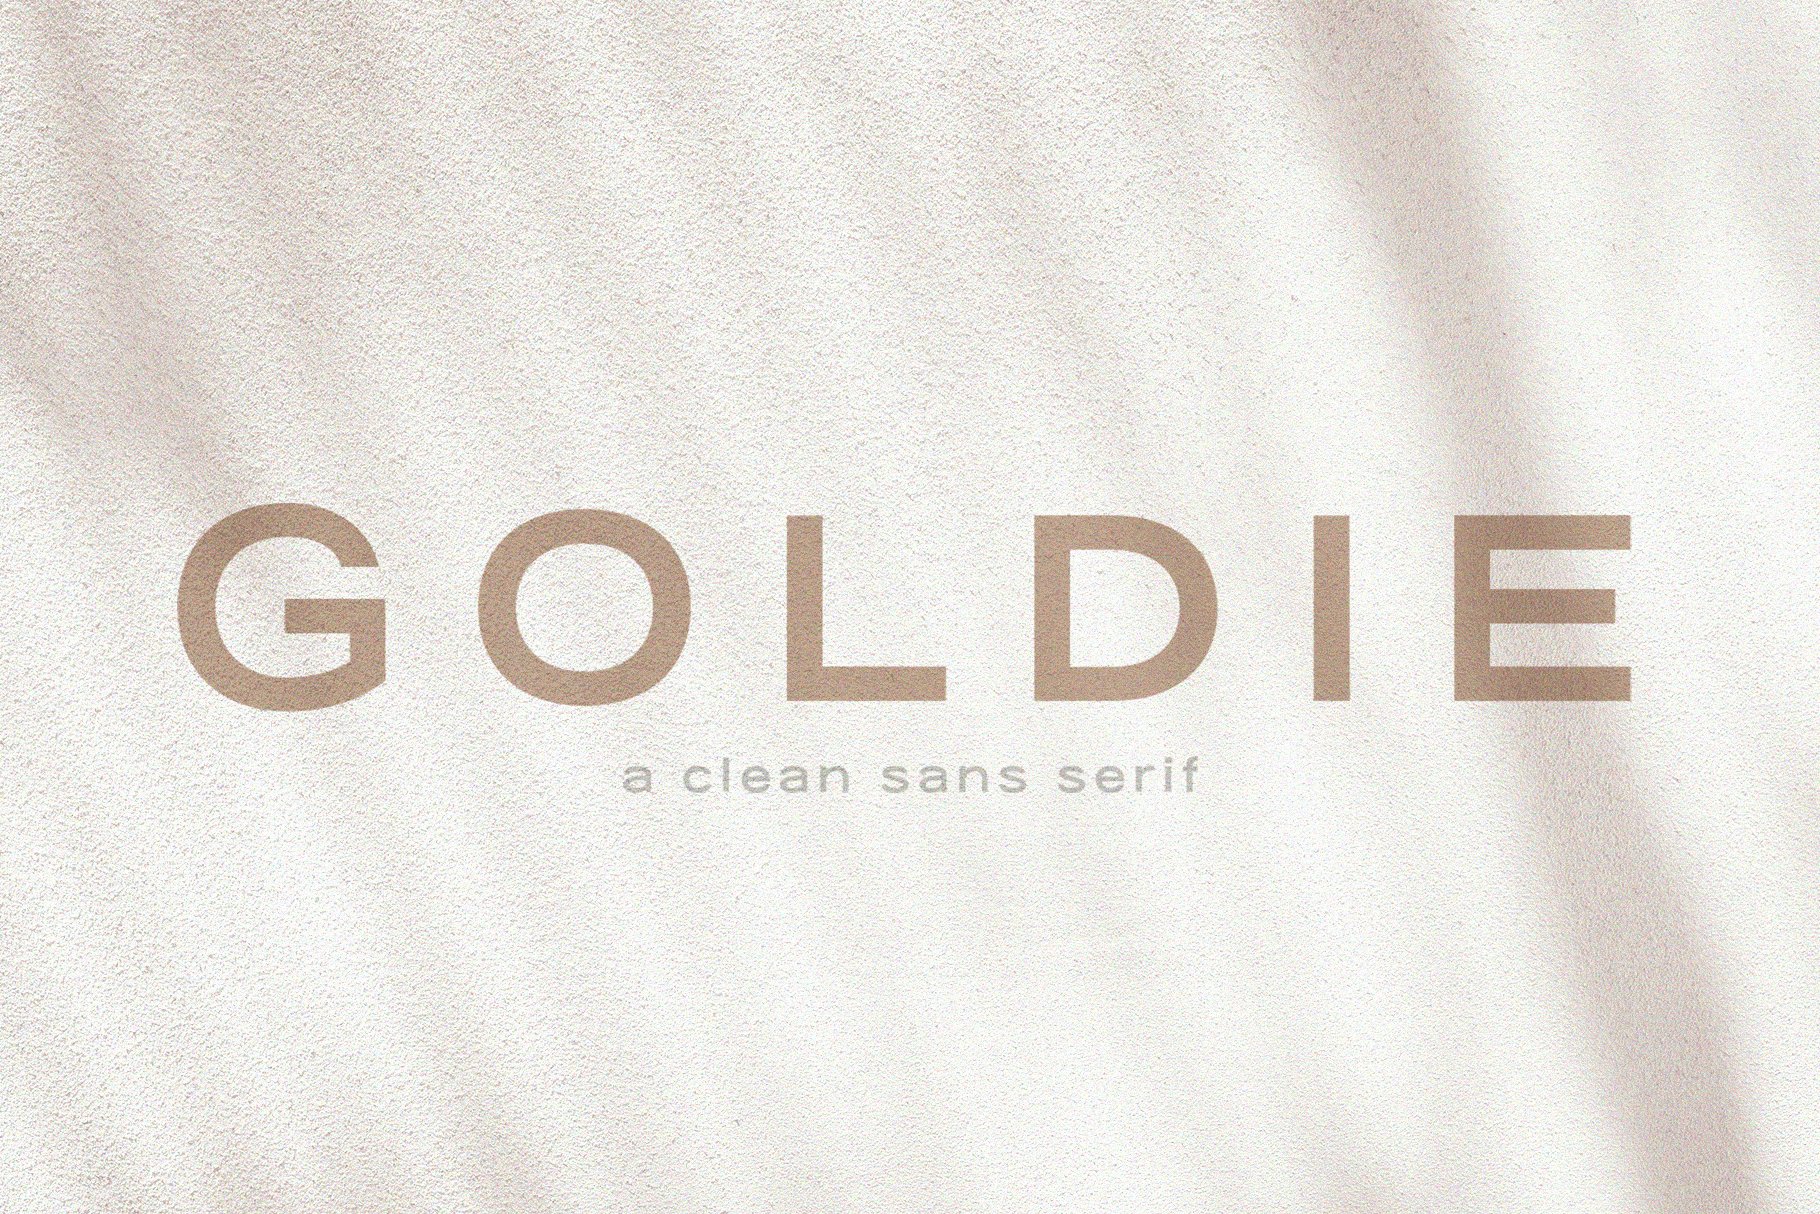 Goldie | A Clean Quotable Sans cover image.